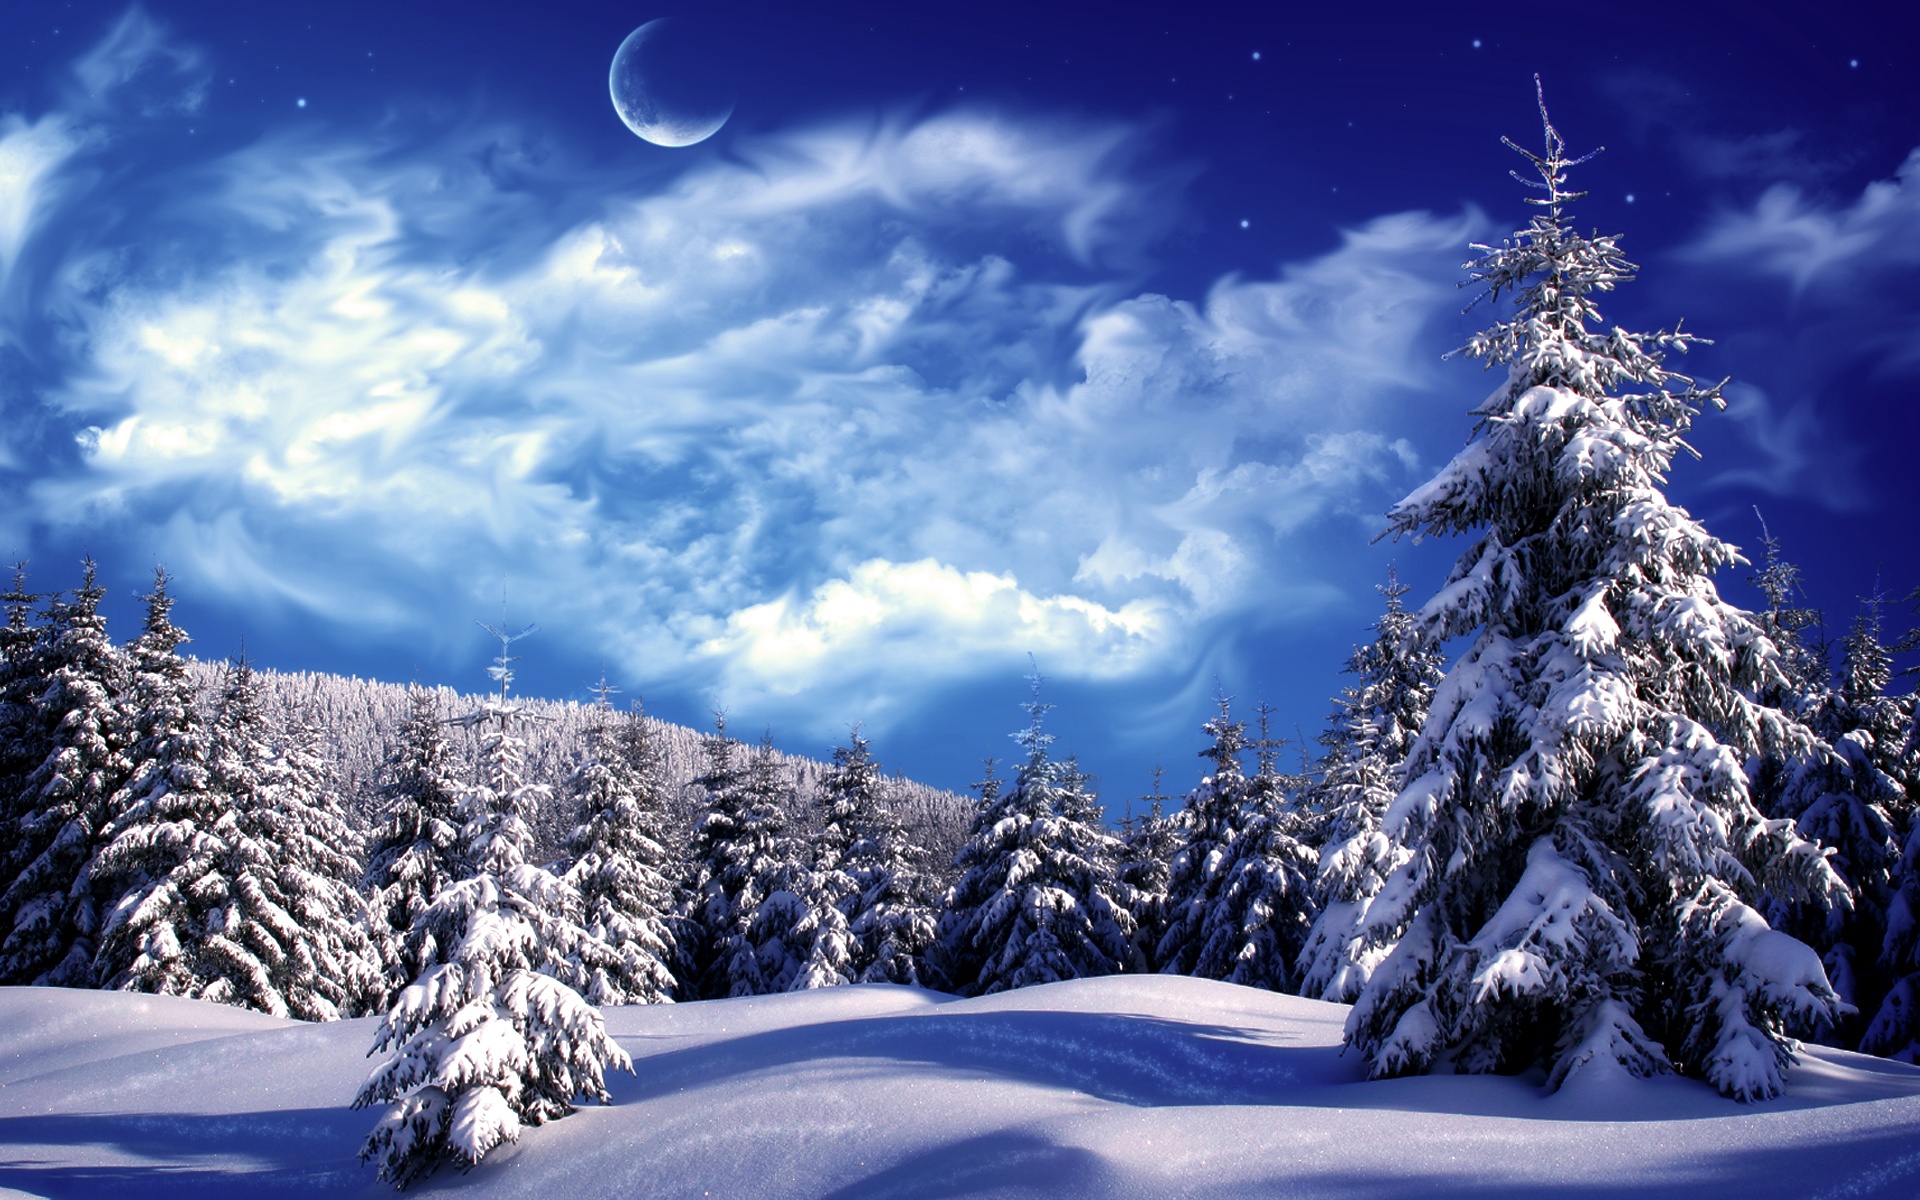 Tuyết Rơi Với Phong Cảnh Mùa Đông Nền Bạc Hình minh họa Sẵn có - Tải xuống Hình  ảnh Ngay bây giờ - Lễ giáng sinh, Ảnh nền - Chủ đề, Bó hoa - iStock